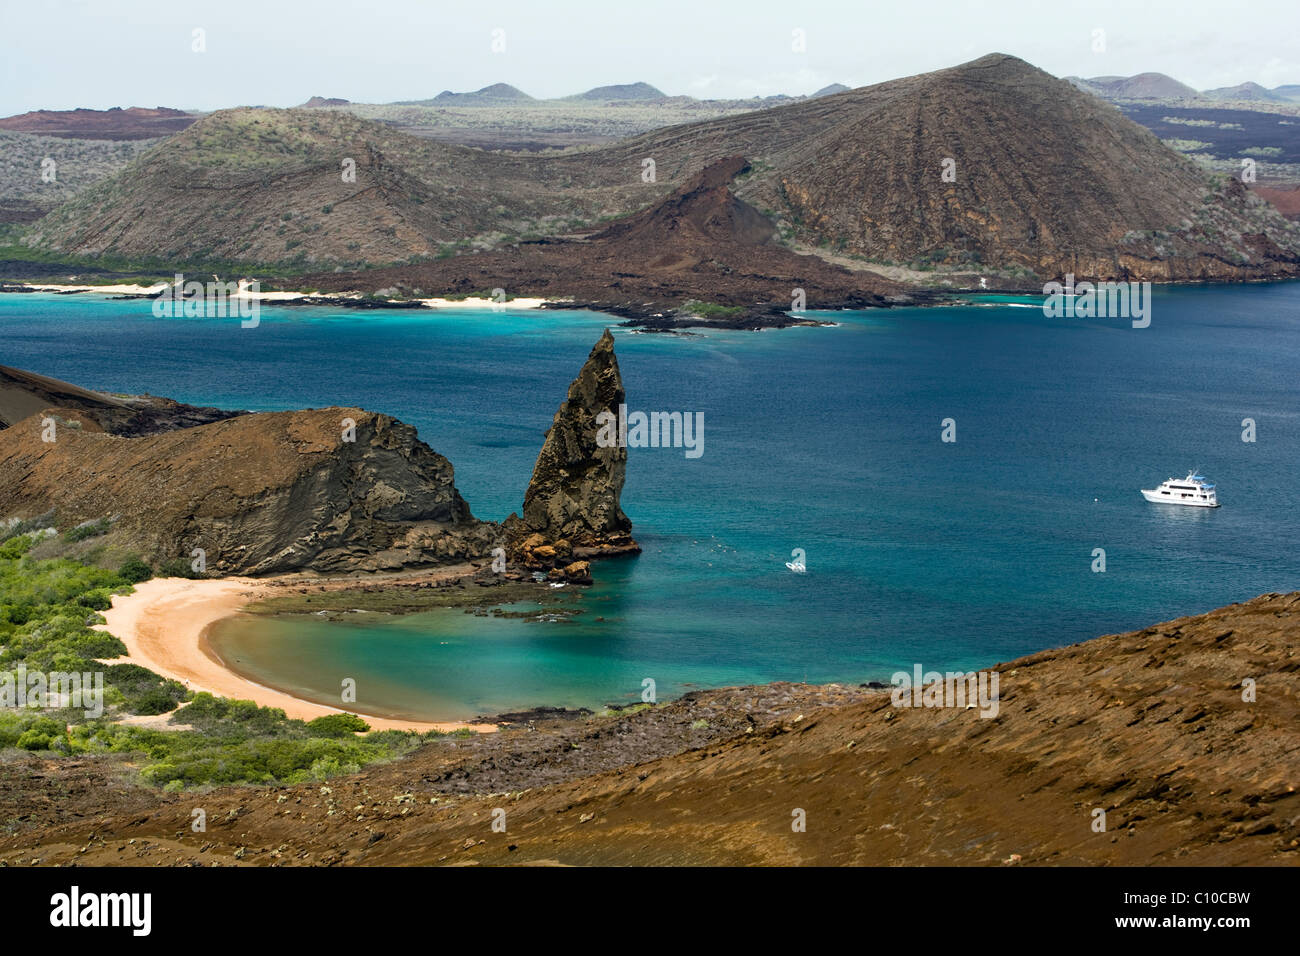 Pinnacle Rock sur l'île de Bartolome - Îles Galapagos, Equateur Banque D'Images